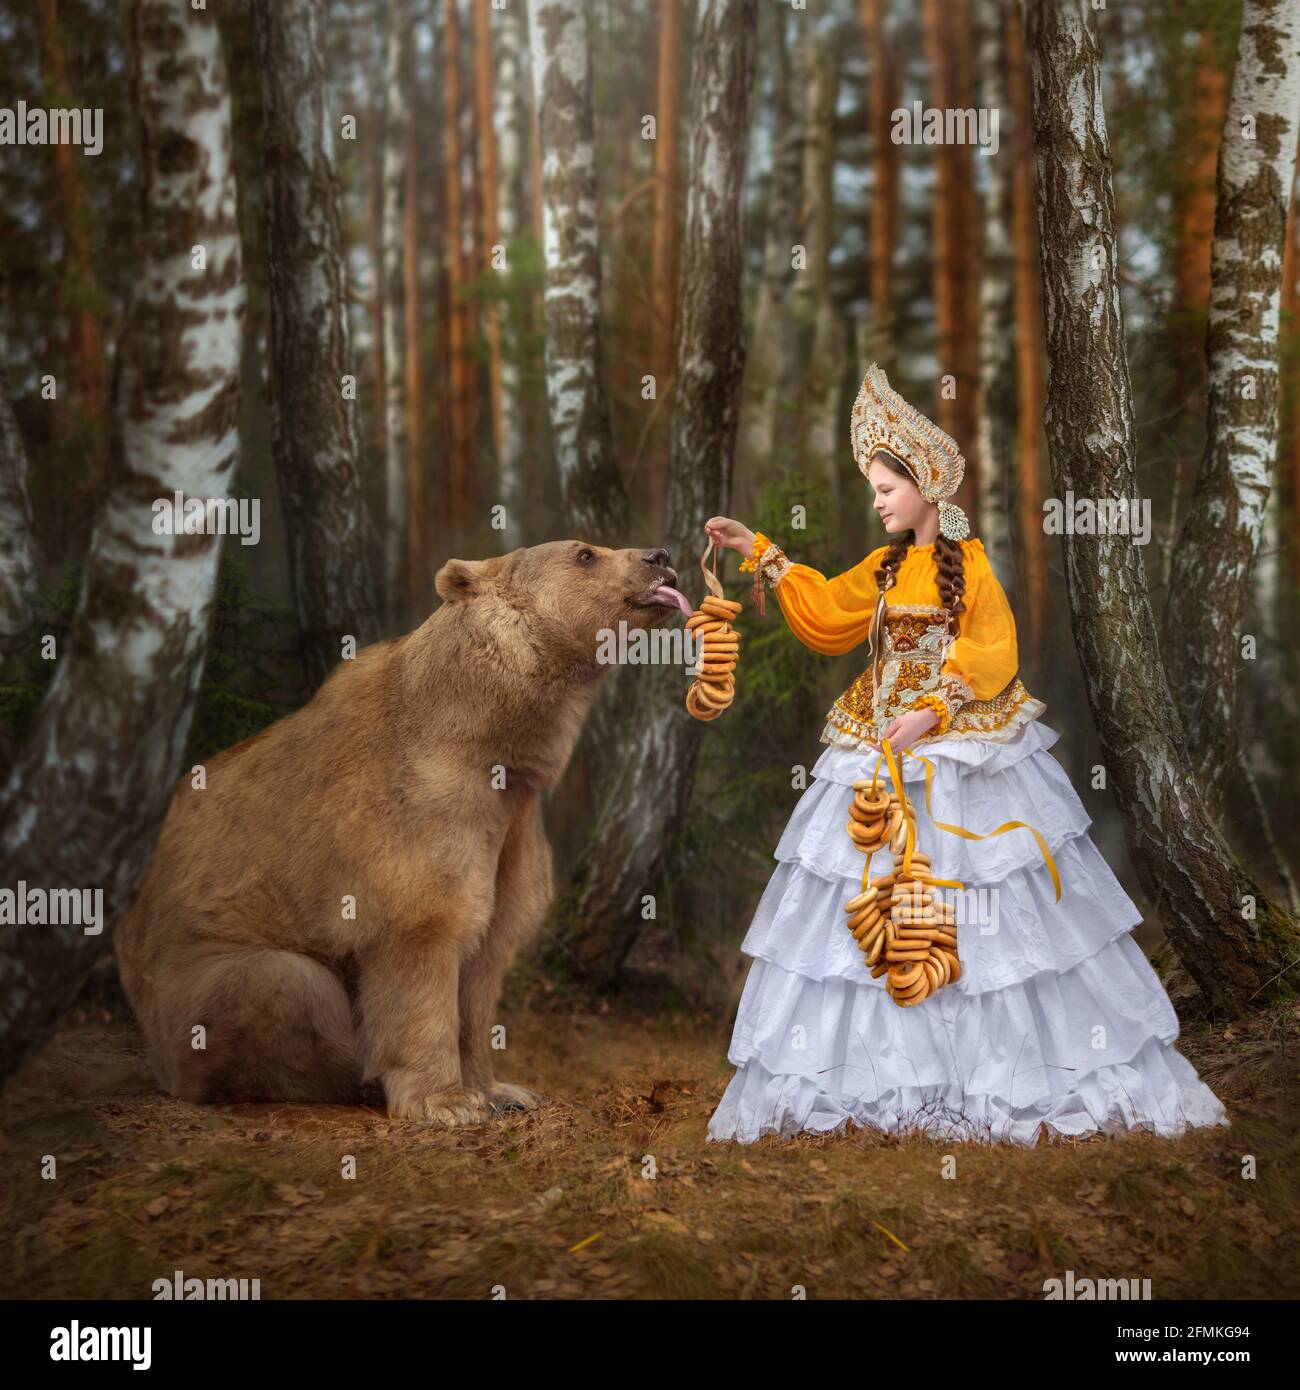 Ein junges Mädchen füttert Stepan einige süße Leckereien. MOSKAU, RUSSLAND: TREFFEN SIE DEN echten Bären, der von seiner Mutter verlassen und von Menschen aufgezogen wurde, die jetzt eine Flouri haben Stockfoto